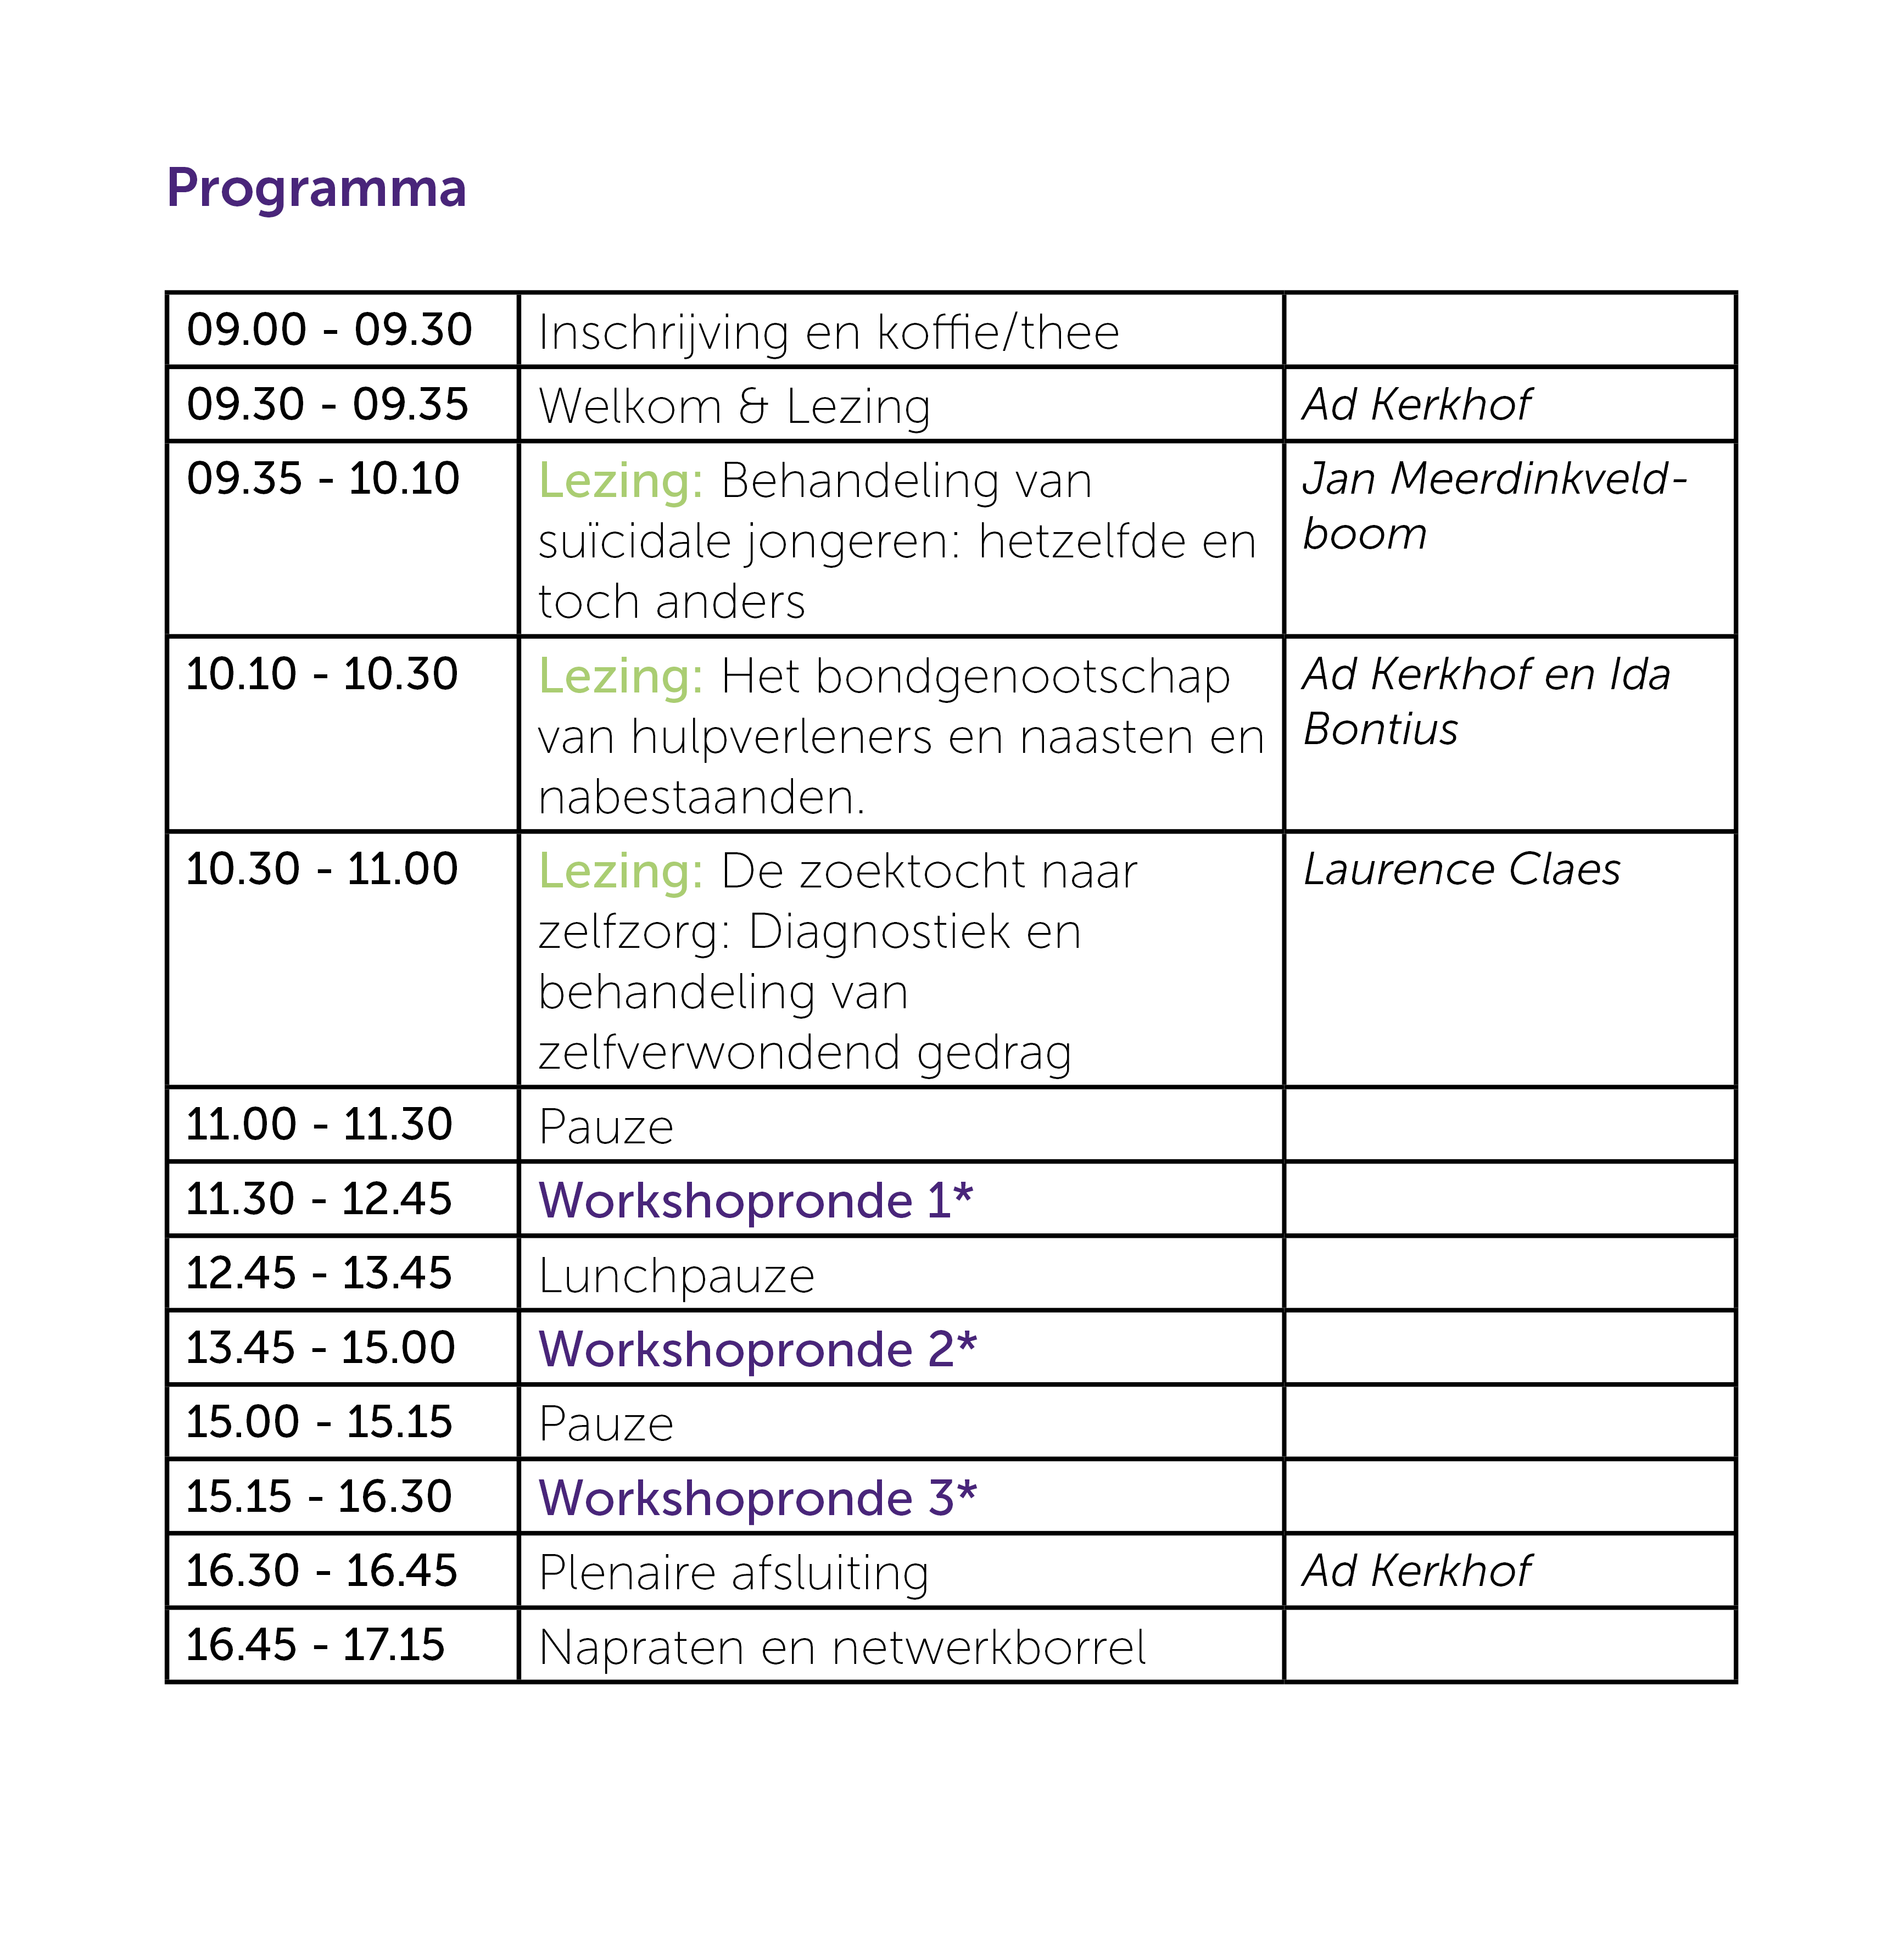 informatie over het programma